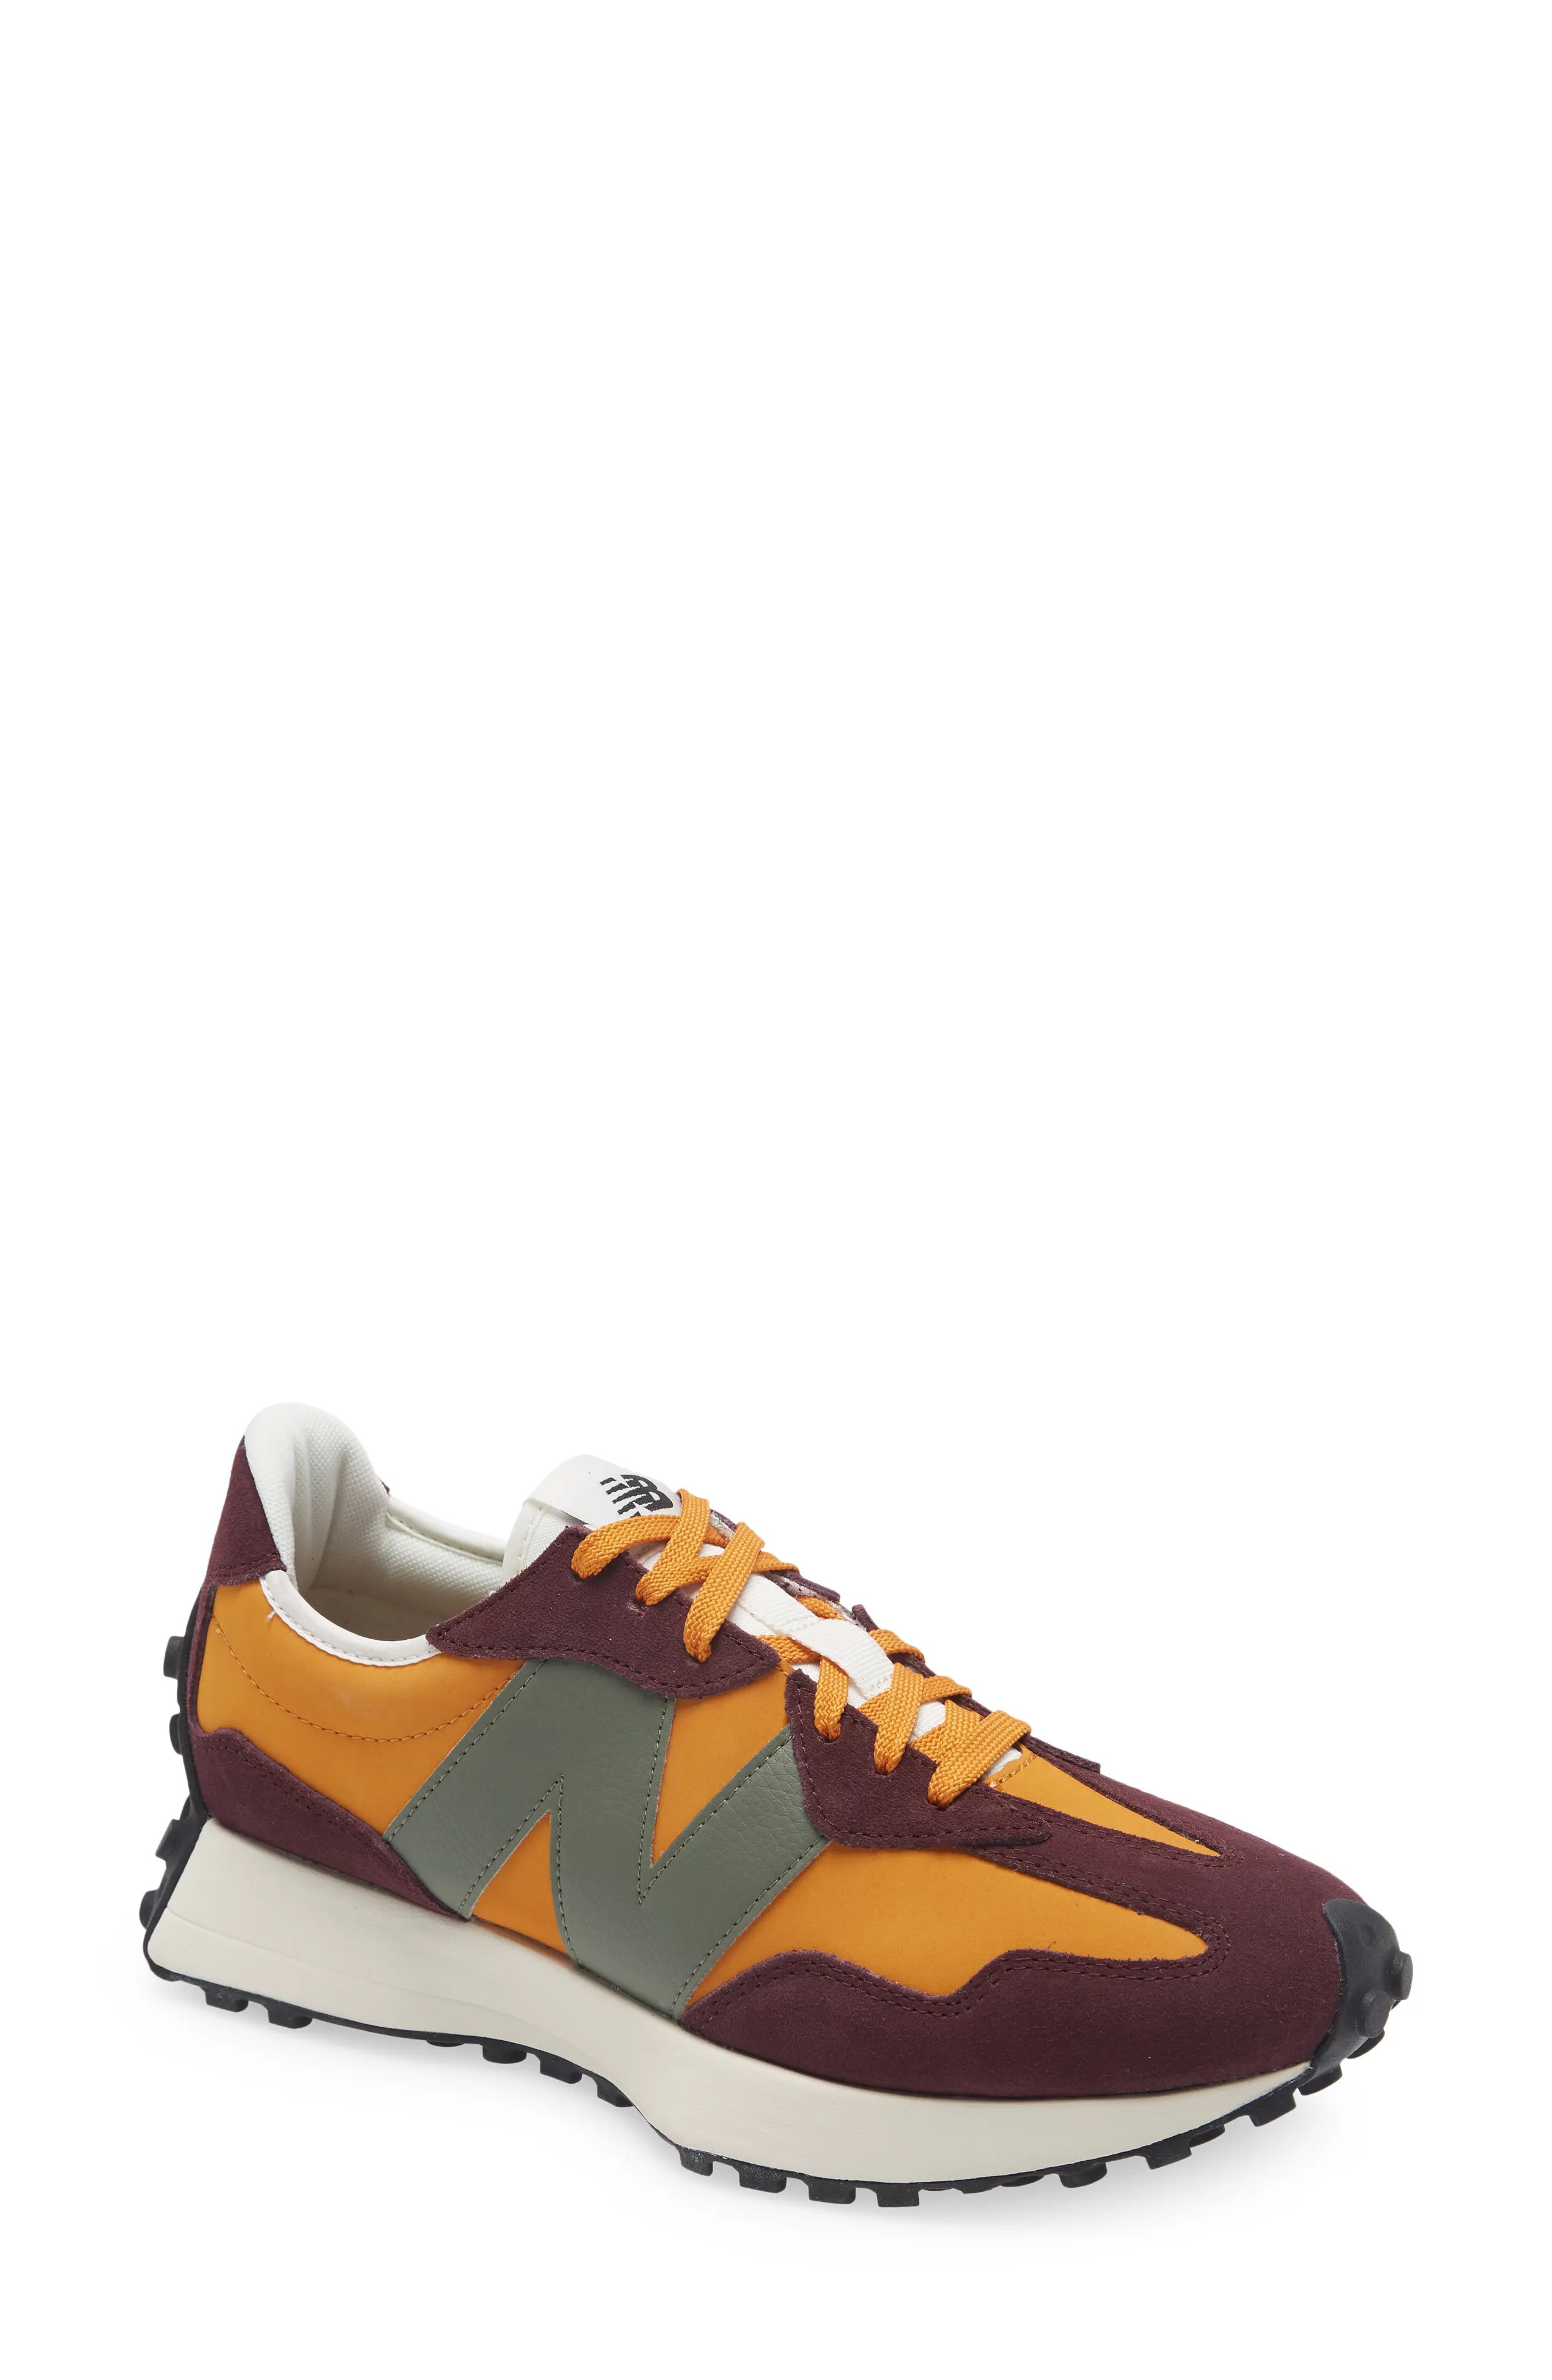 New Balance 327 Sneaker in Madras Orange at Nordstrom, Size 13 | Nordstrom